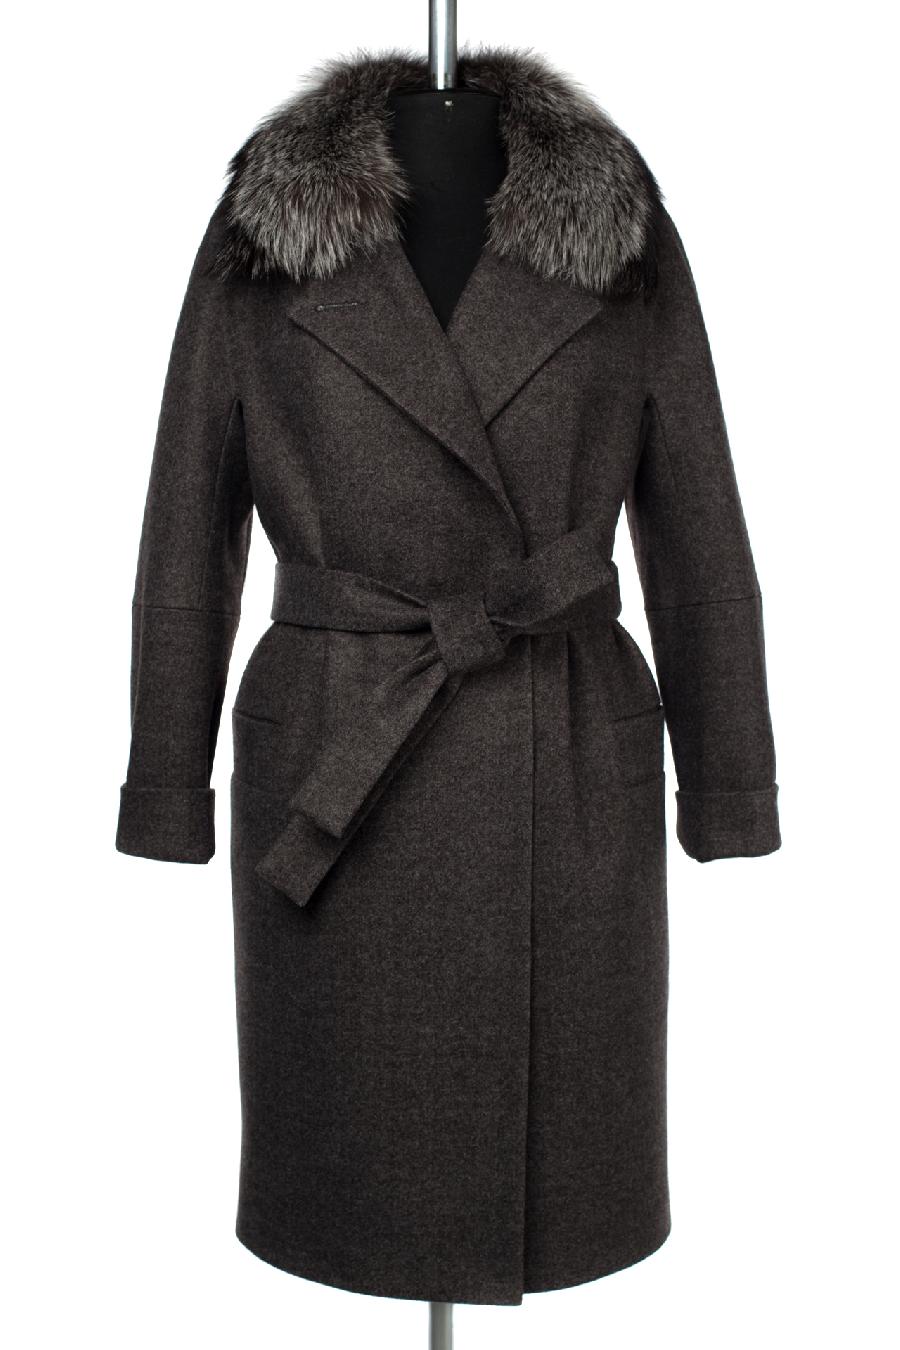 02-3022 Пальто женское утепленное (пояс) валяная шерсть серо-черный